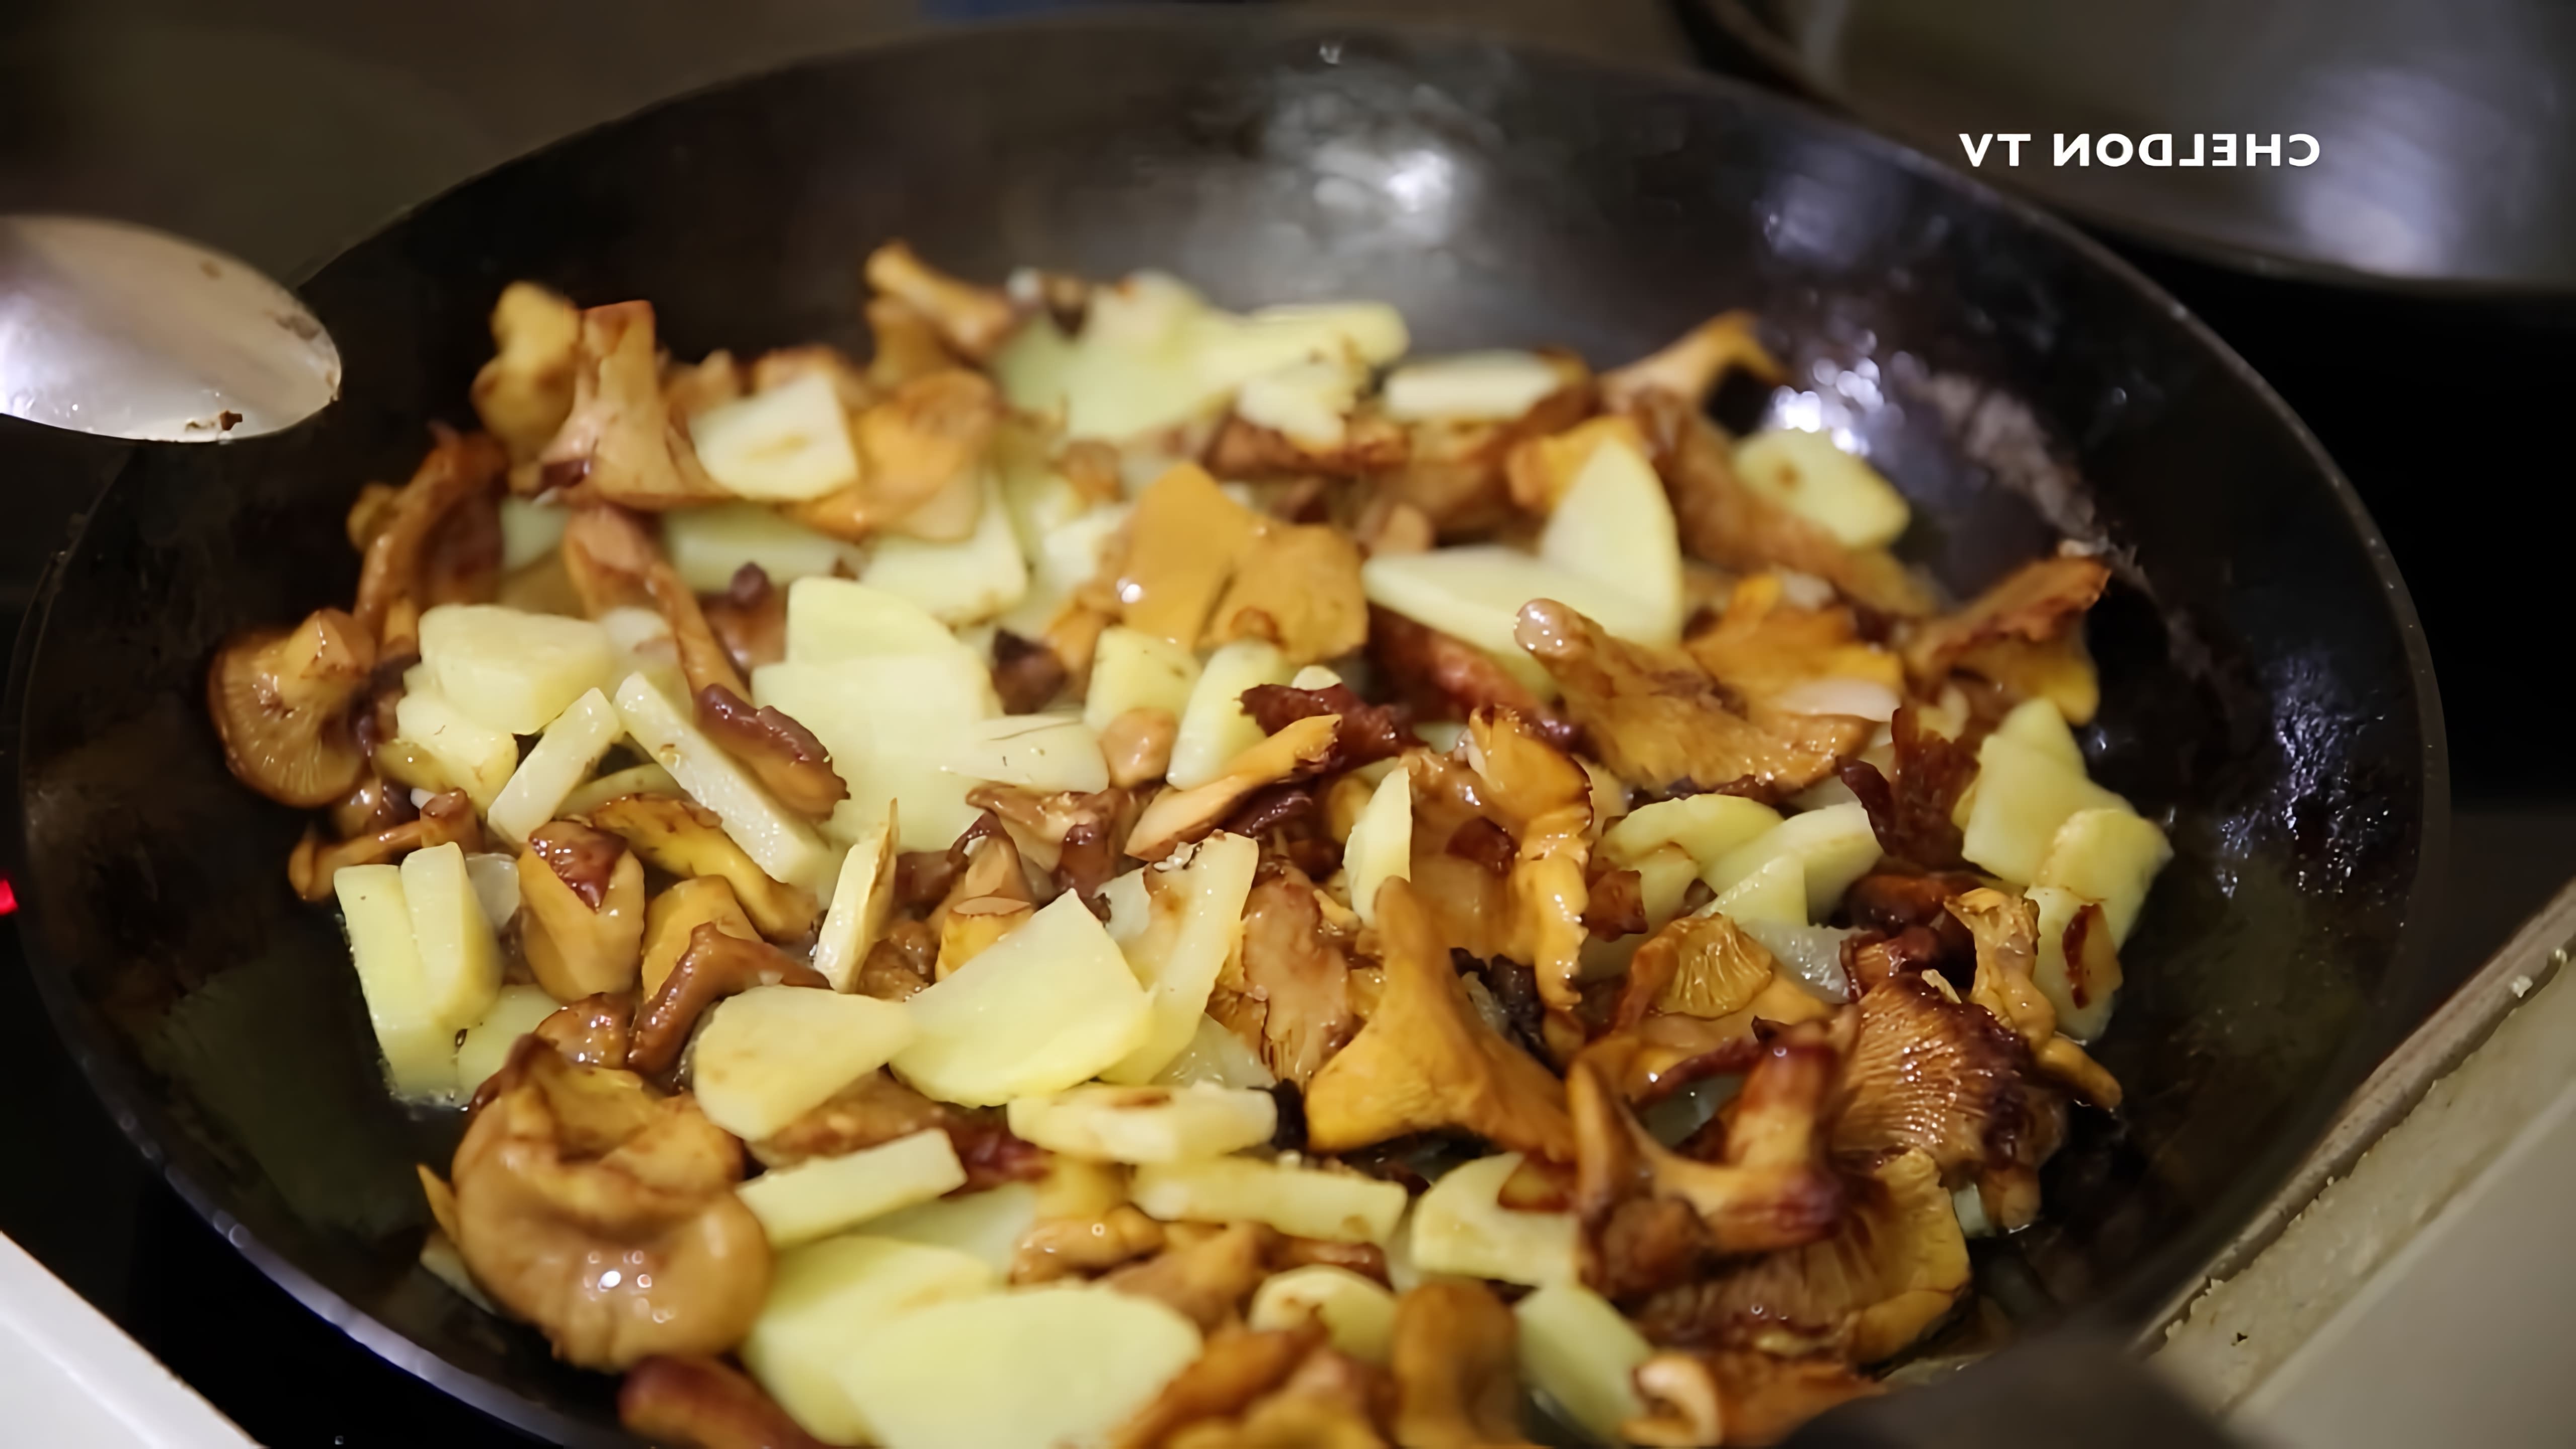 В этом видео показан процесс приготовления грибов лисичек с картошкой в сметане